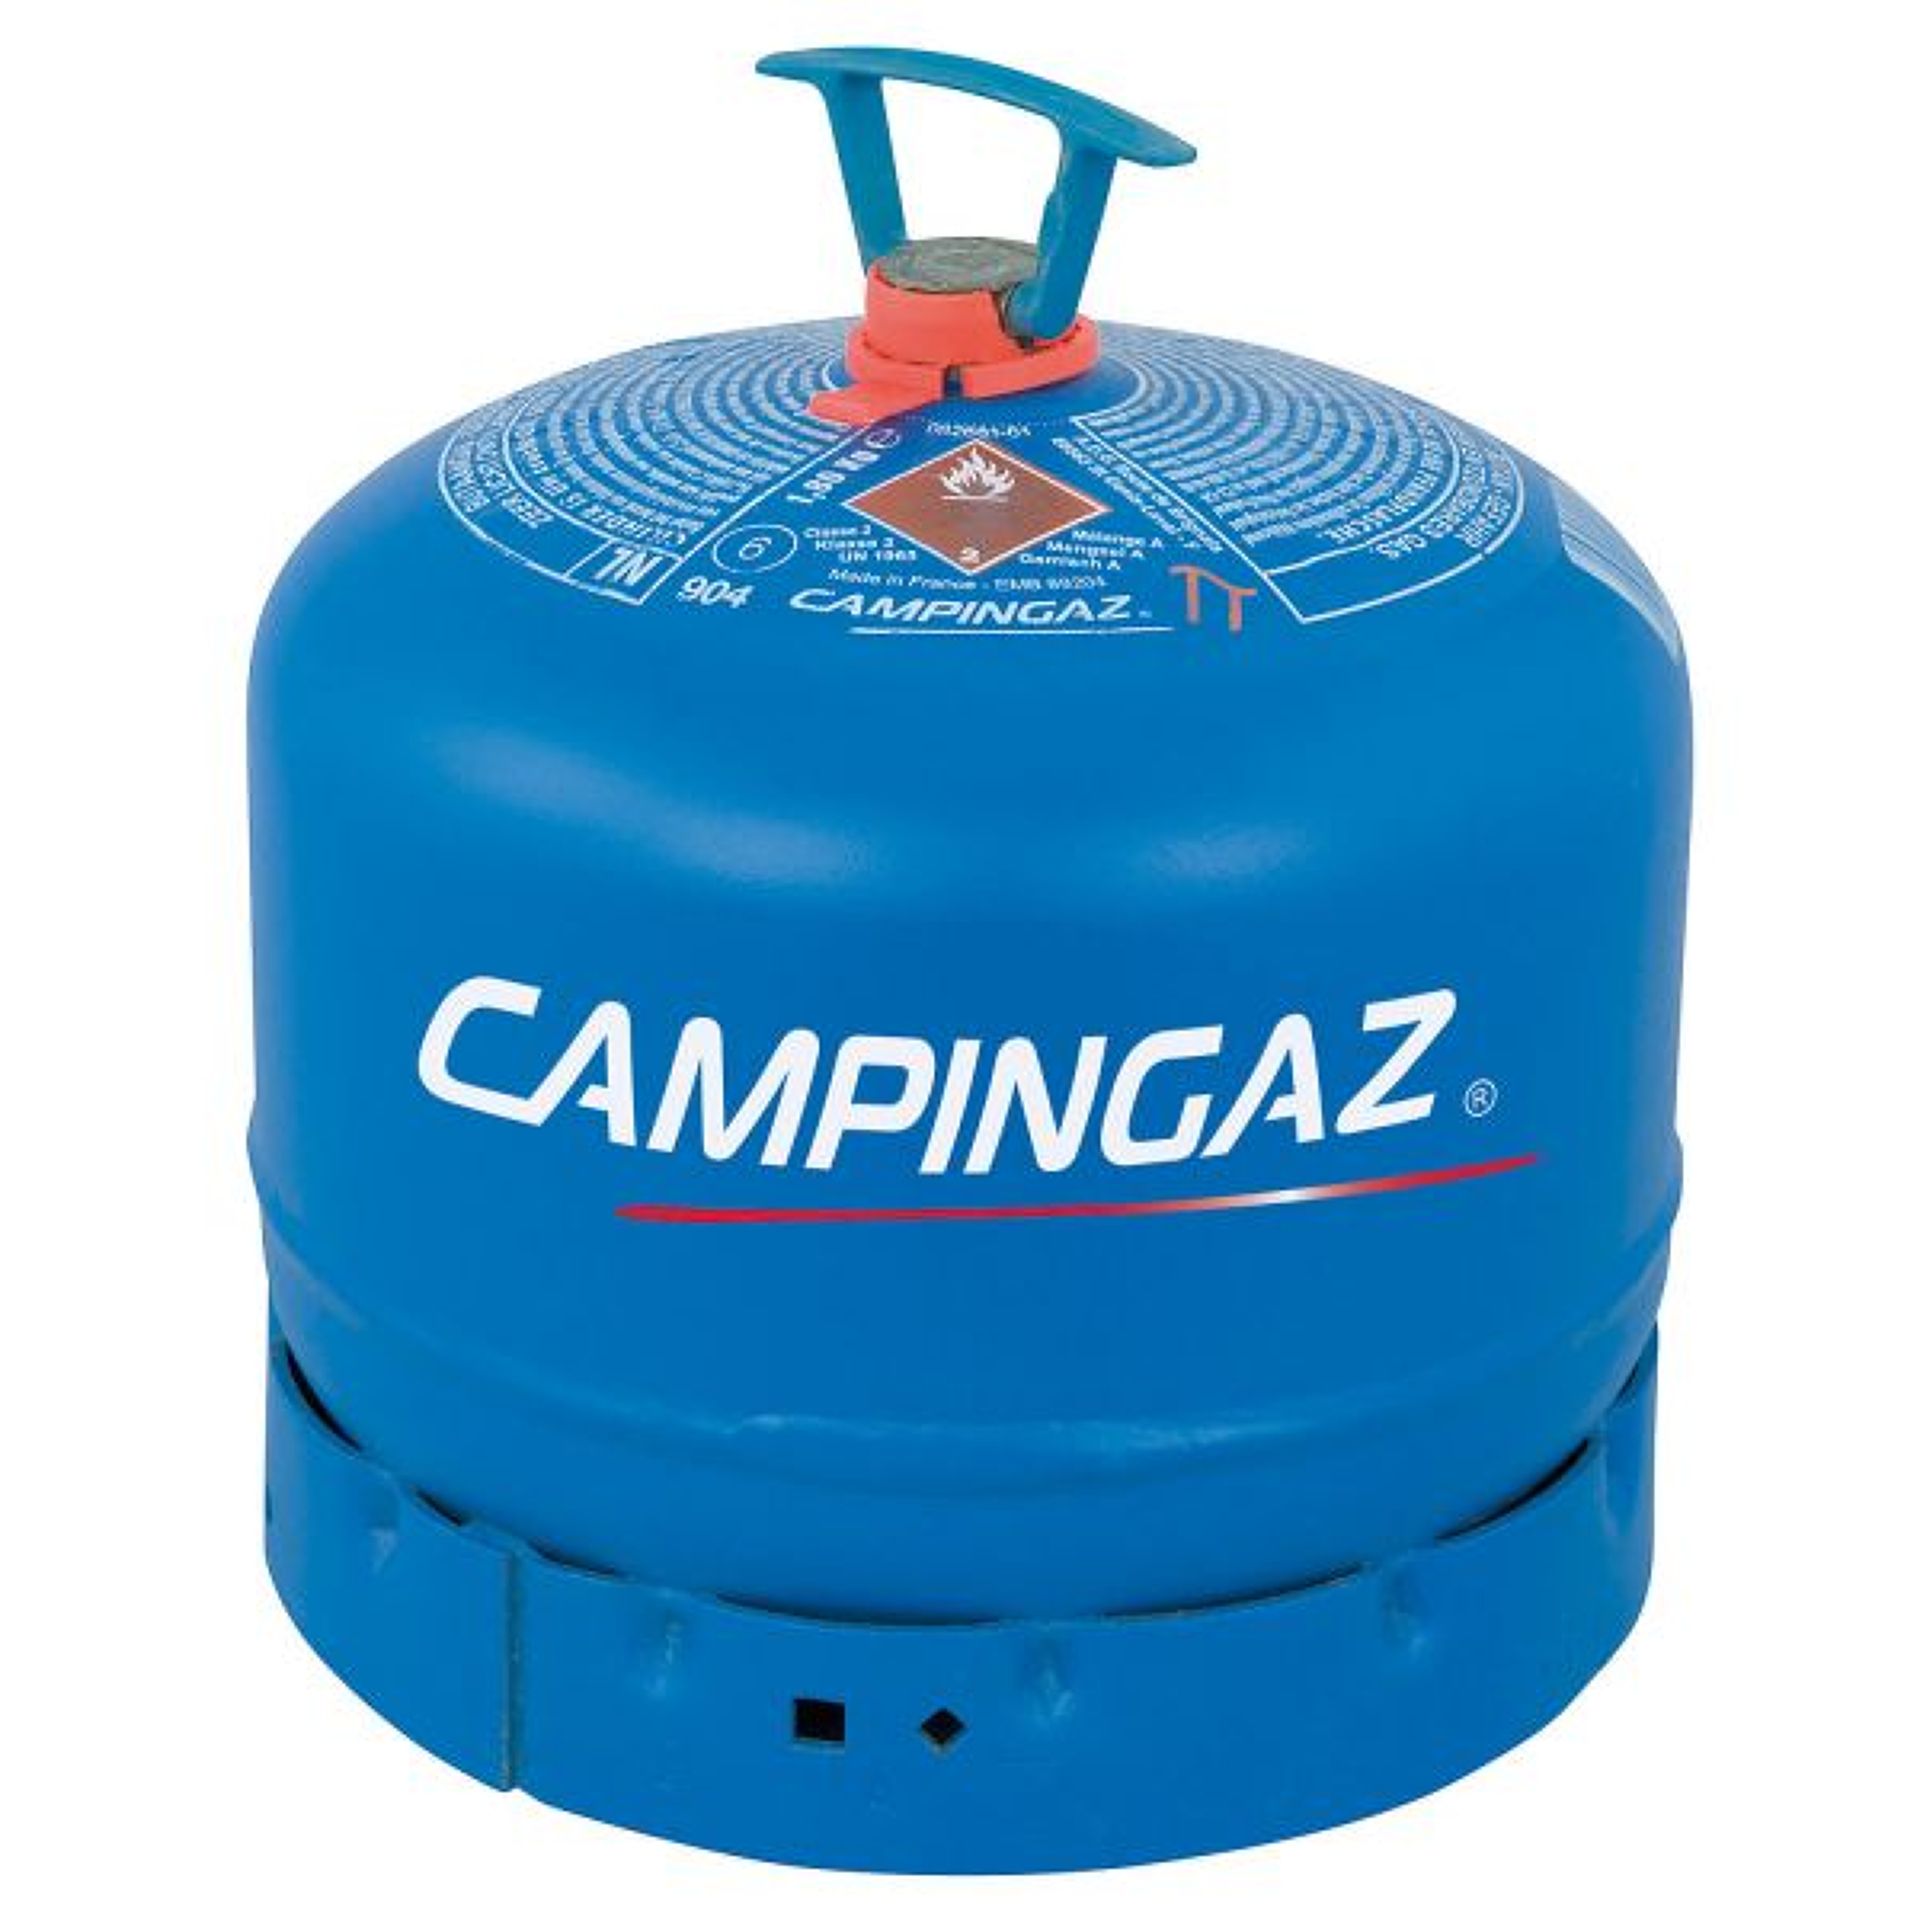 Campingaz lahev R 904 1.85 kg